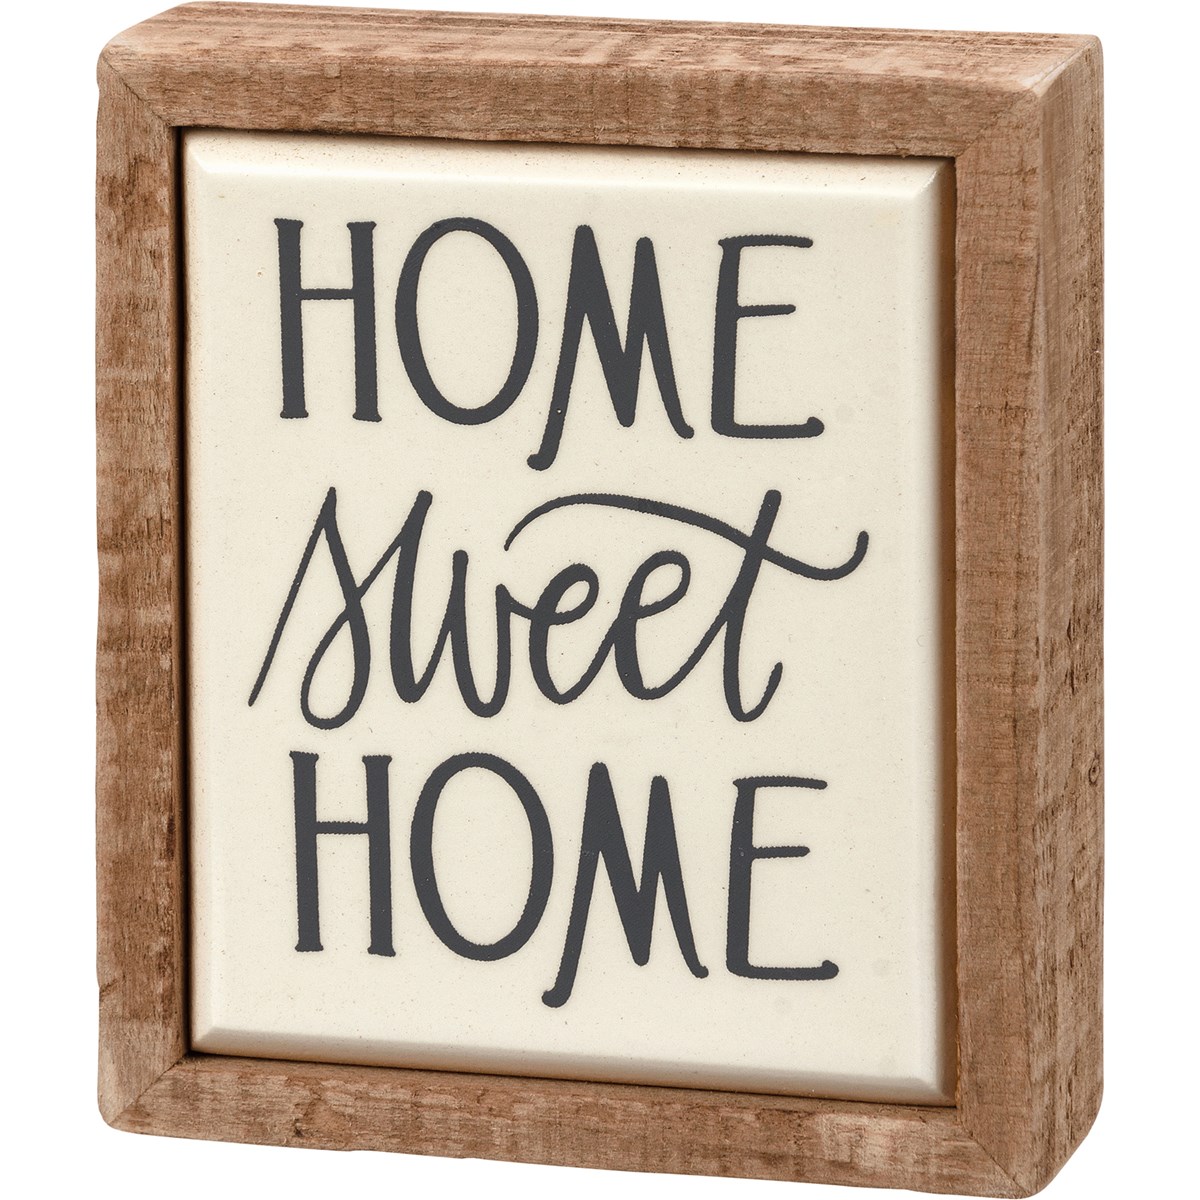 Home Sweet Home Box Sign Mini - Wood